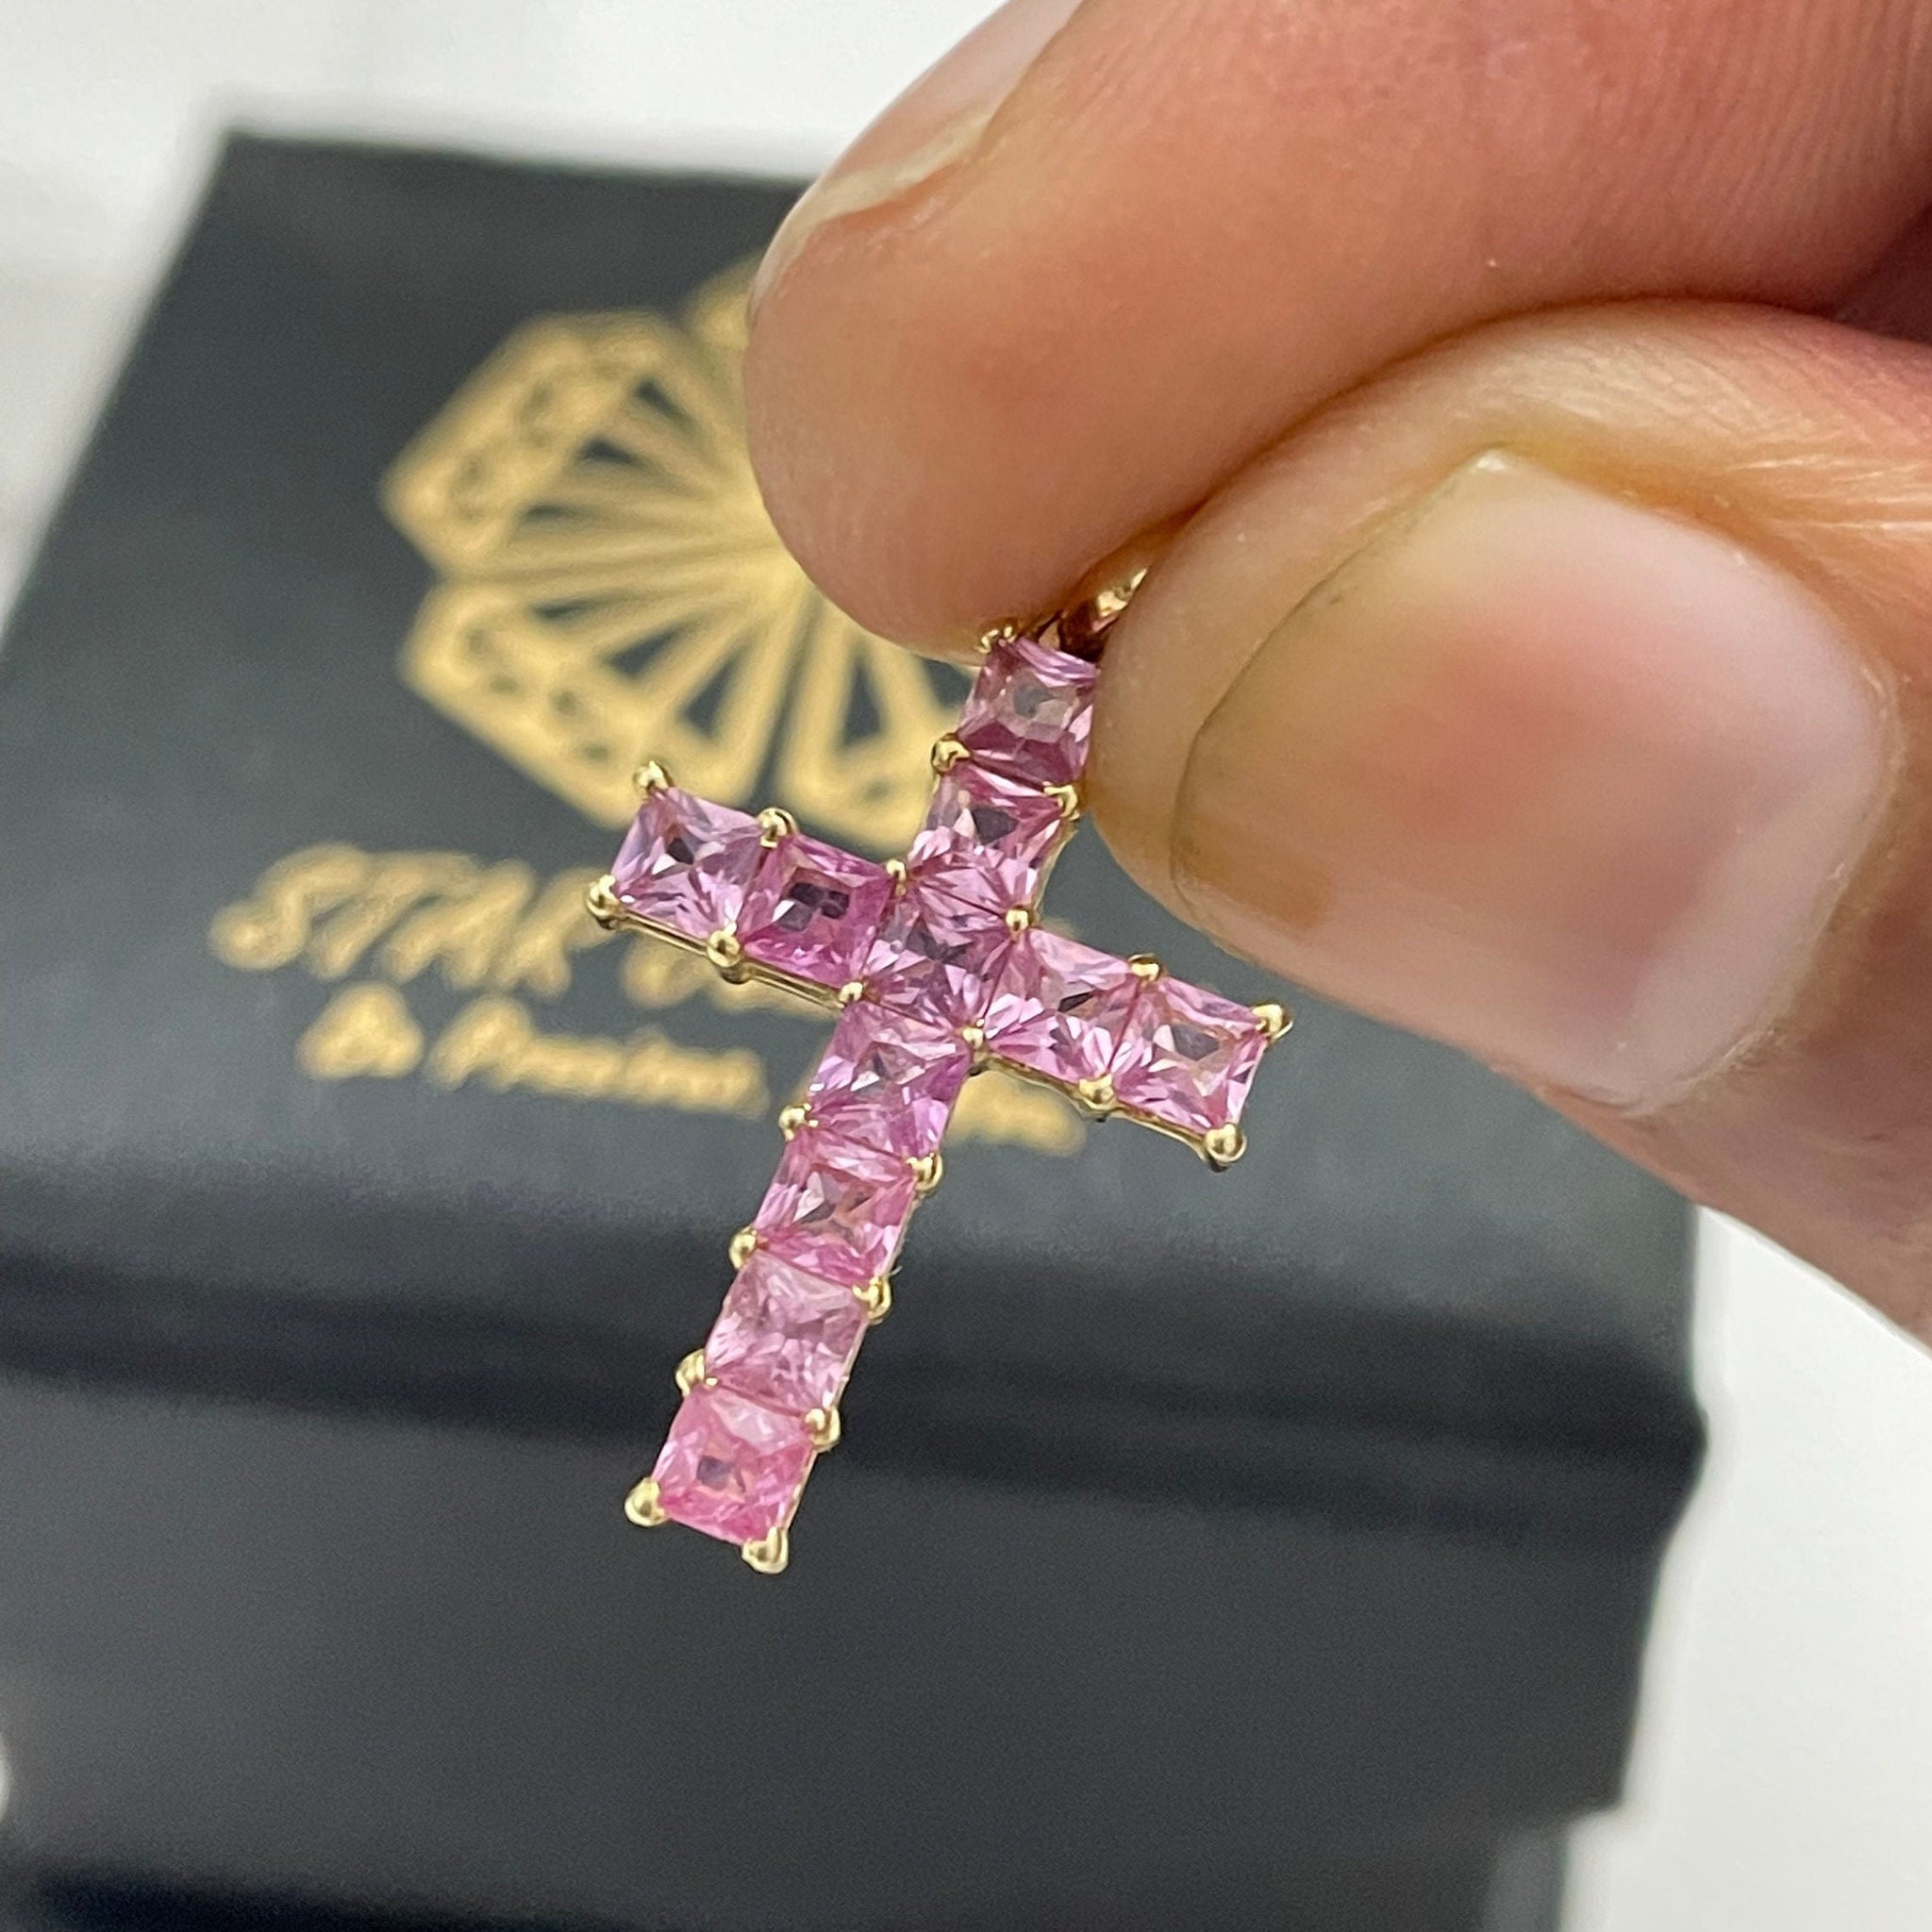 Croix de diamant Moissanite coupe princesse incolore, pendentif croix Moissanite unique, pendentif croix Moissanite en or massif 14K, croix Moissanite